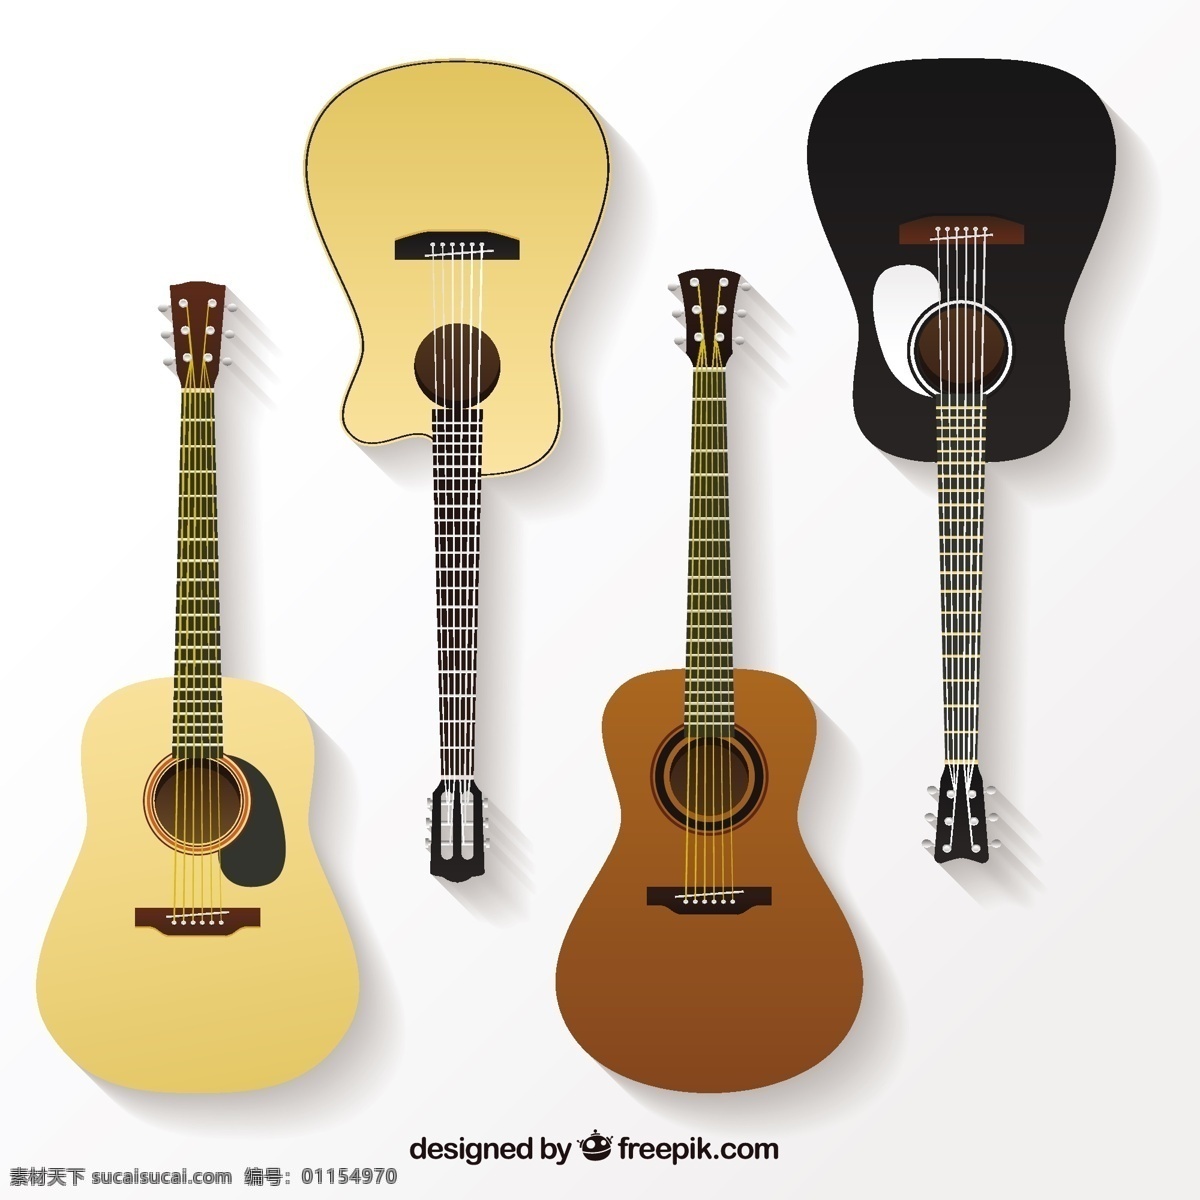 各种现实吉他 音乐 吉他 平板 平面设计 声音 音乐会 演奏 乐器 歌曲 设备 现实主义 旋律 声学 多样性